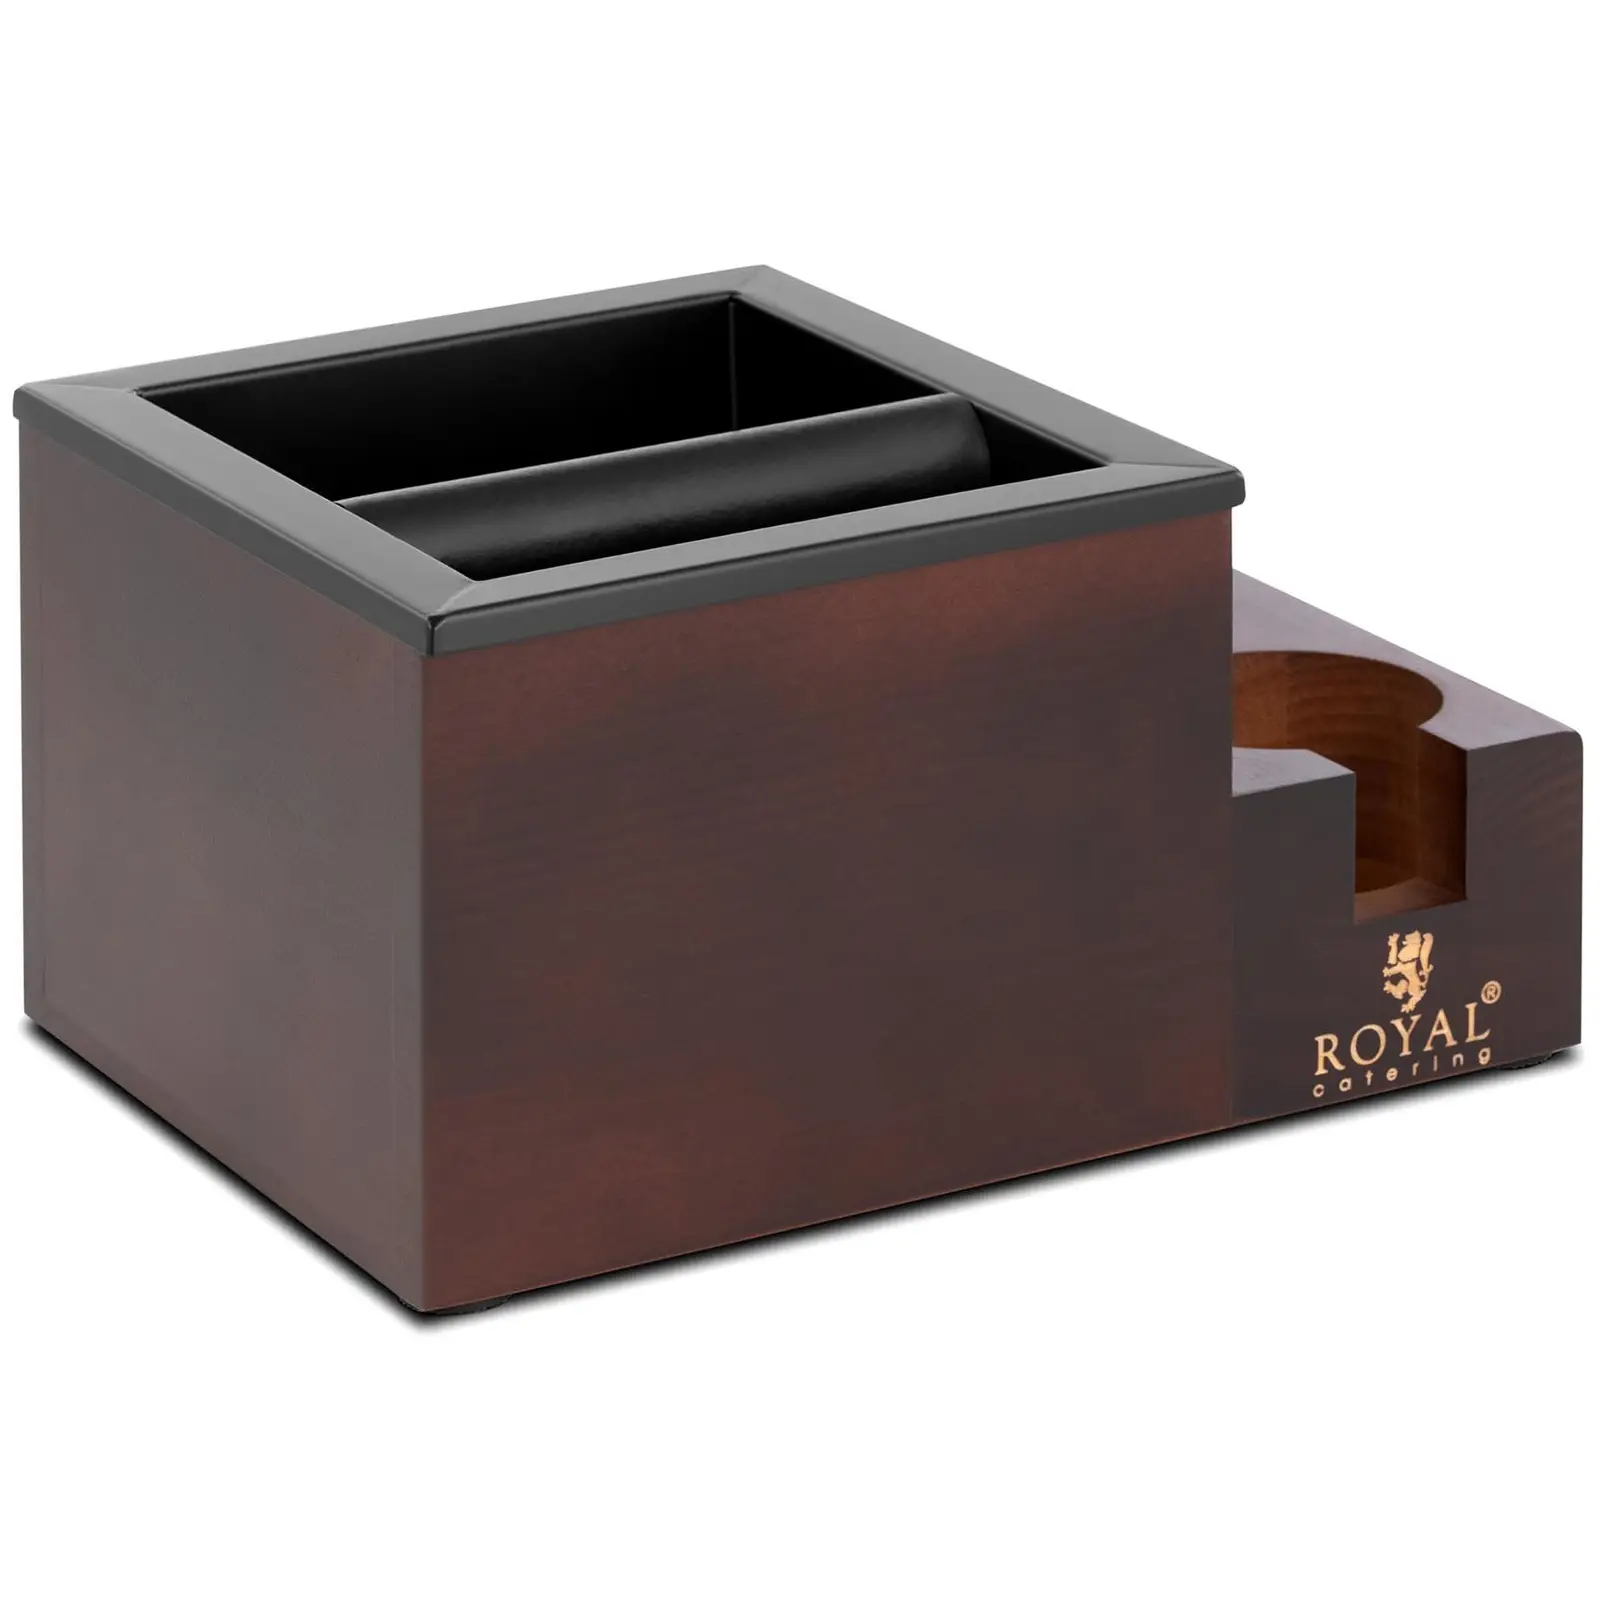 Cassetto fondi caffè con battifiltro e scomparto per accessori - Acciaio inox, legno 3,1 l - Royal Catering